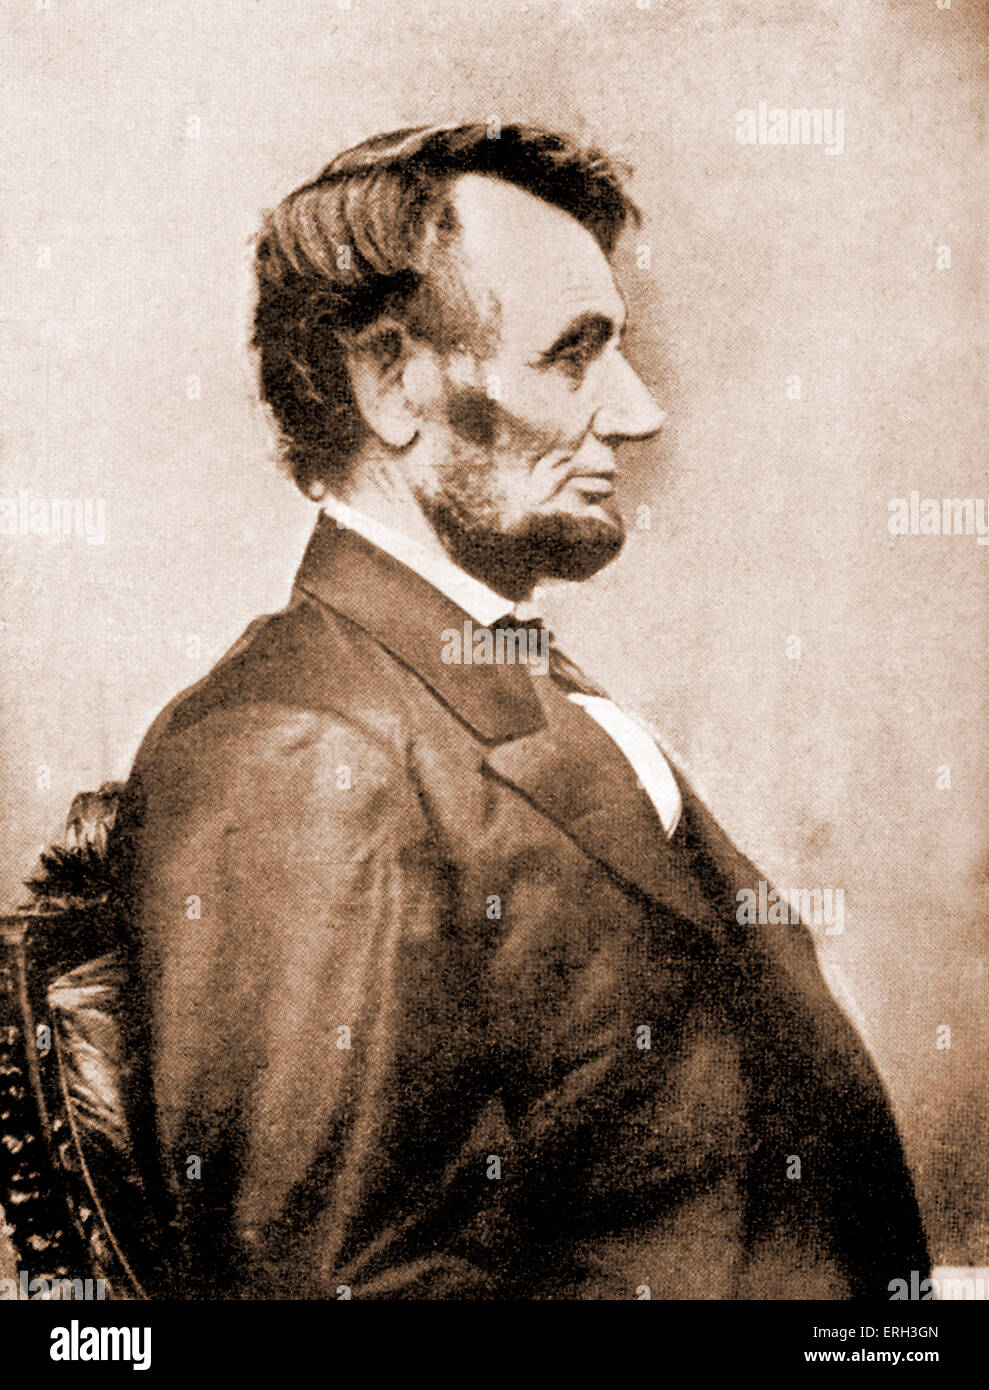 Abraham Lincoln - Porträt im Profil. Foto von der 16. Präsident der Vereinigten Staaten im Jahre 1864 übernommen, ein Jahr, bevor er ermordet wurde. 12. Februar 1809 – 15. April 1865. Stockfoto